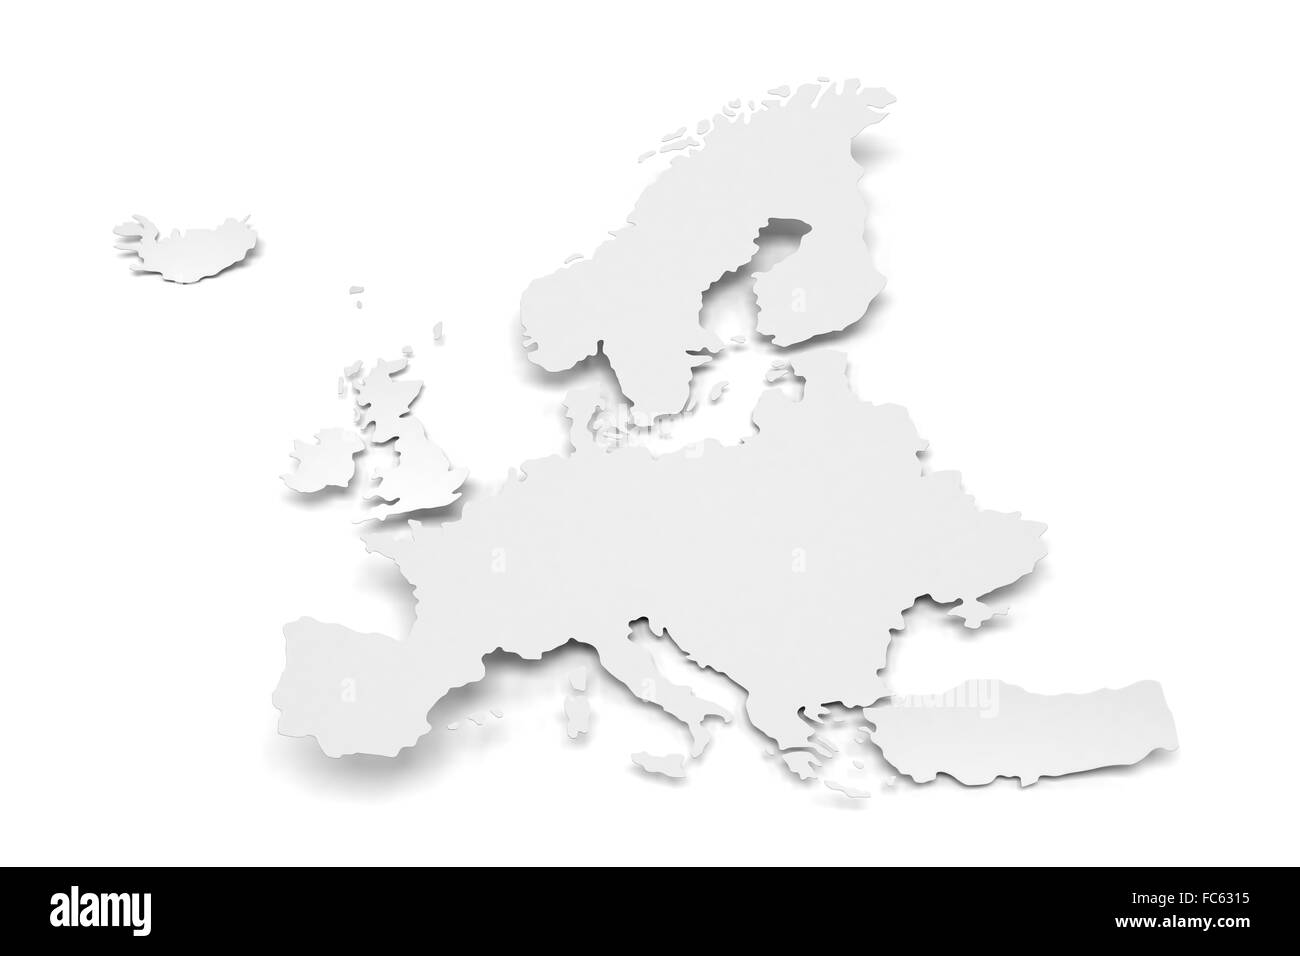 Dettaglio mappa su carta d'Europa Foto Stock